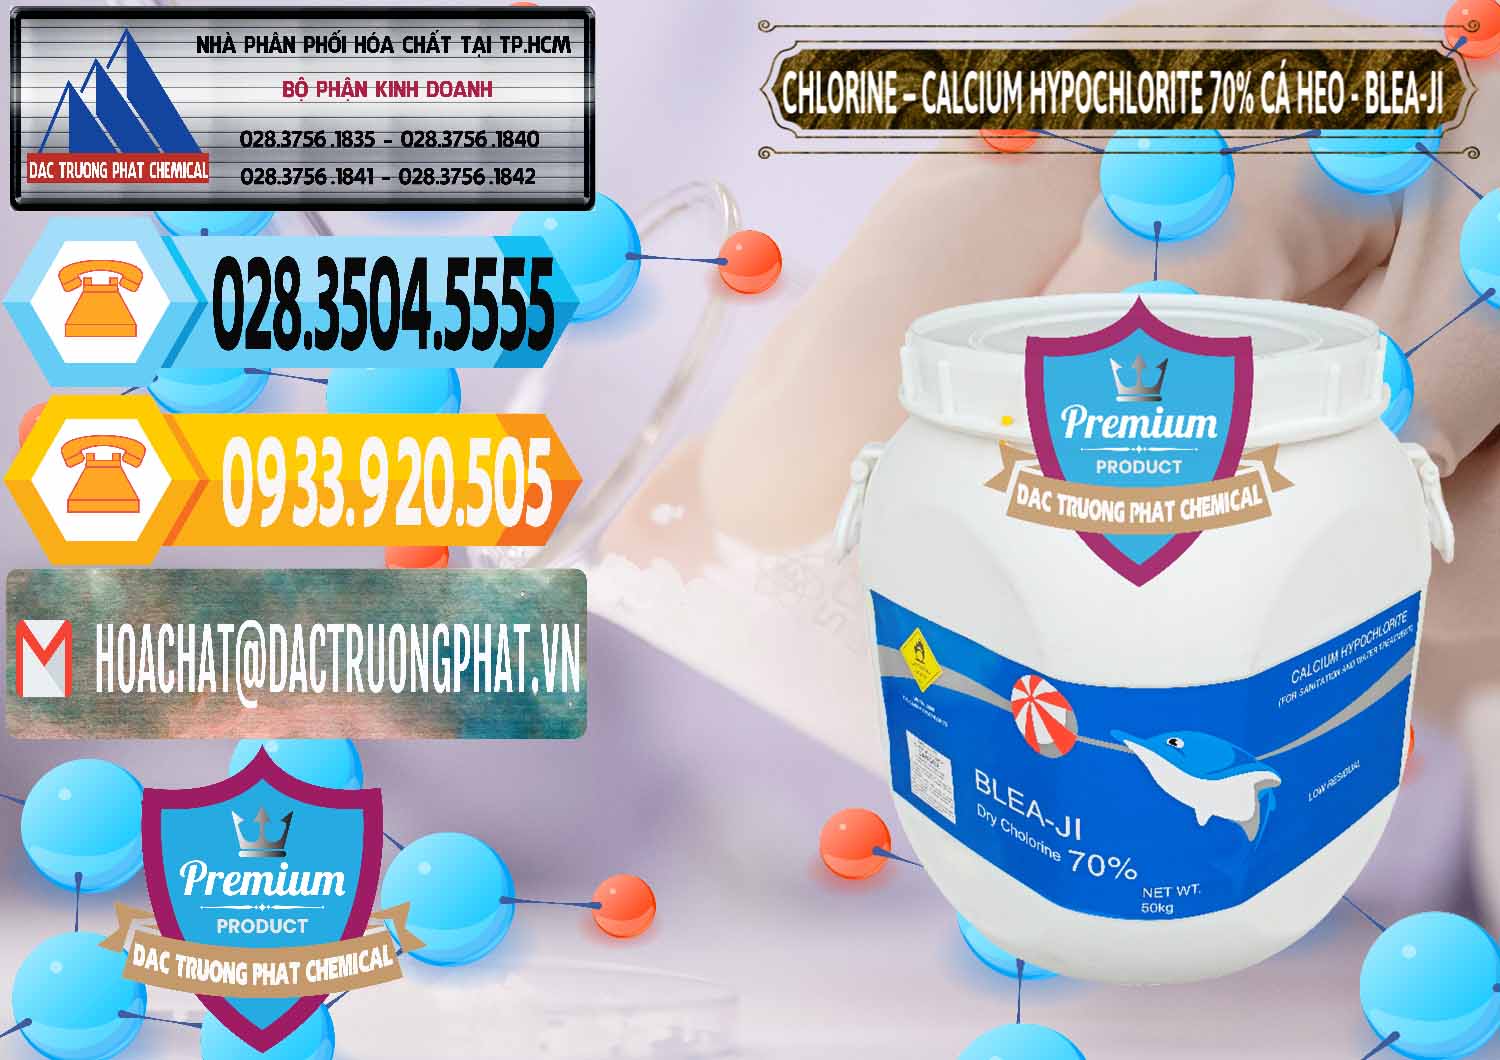 Nơi chuyên nhập khẩu & bán Clorin - Chlorine Cá Heo 70% Blea-Ji Trung Quốc China - 0056 - Công ty phân phối & cung cấp hóa chất tại TP.HCM - hoachattayrua.net